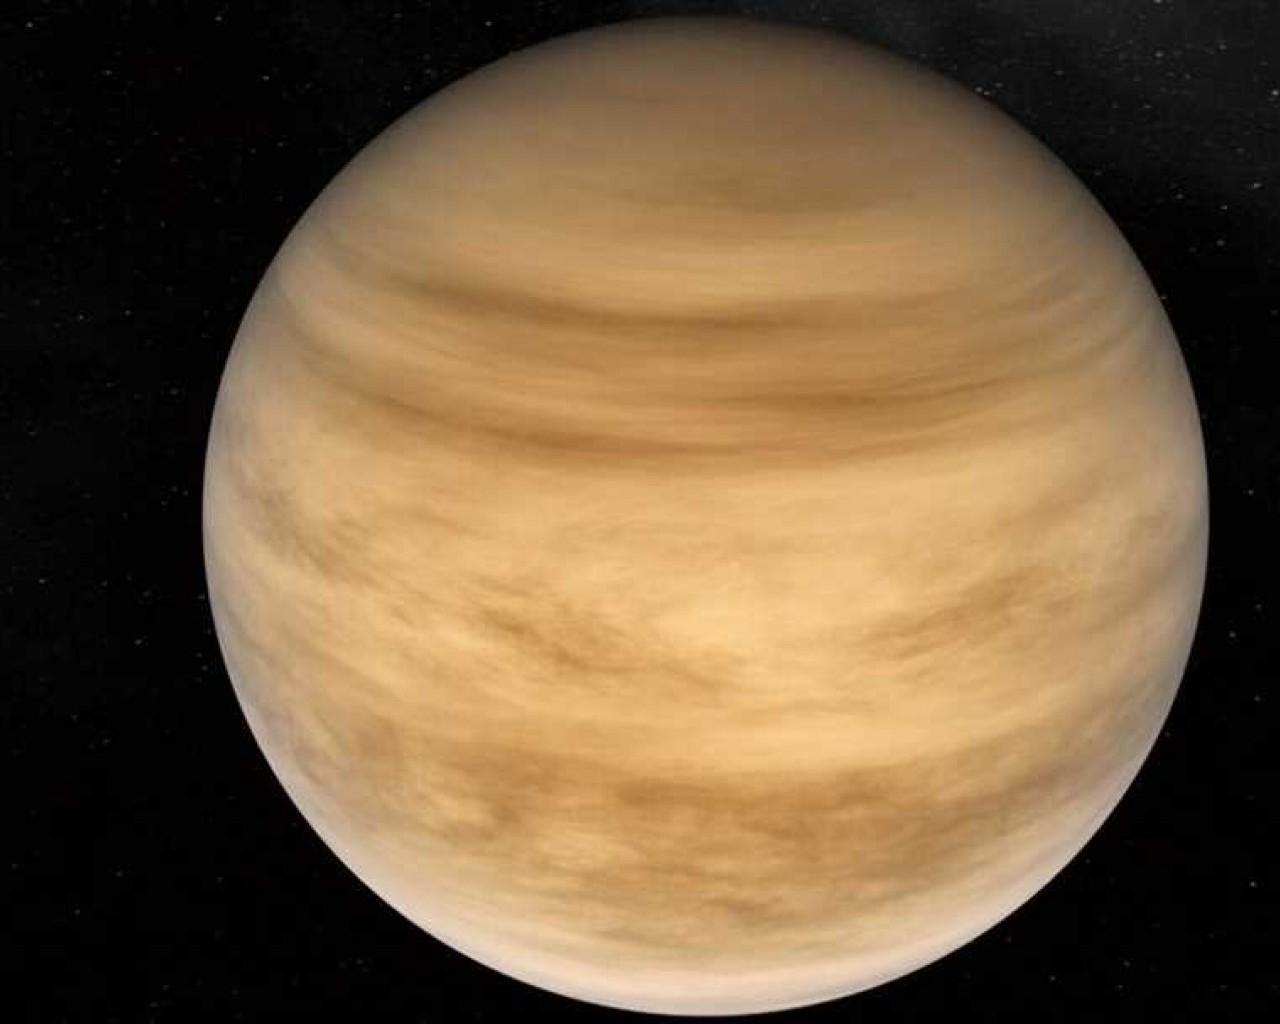 Венера – таинственная и загадочная планета нашей солнечной системы